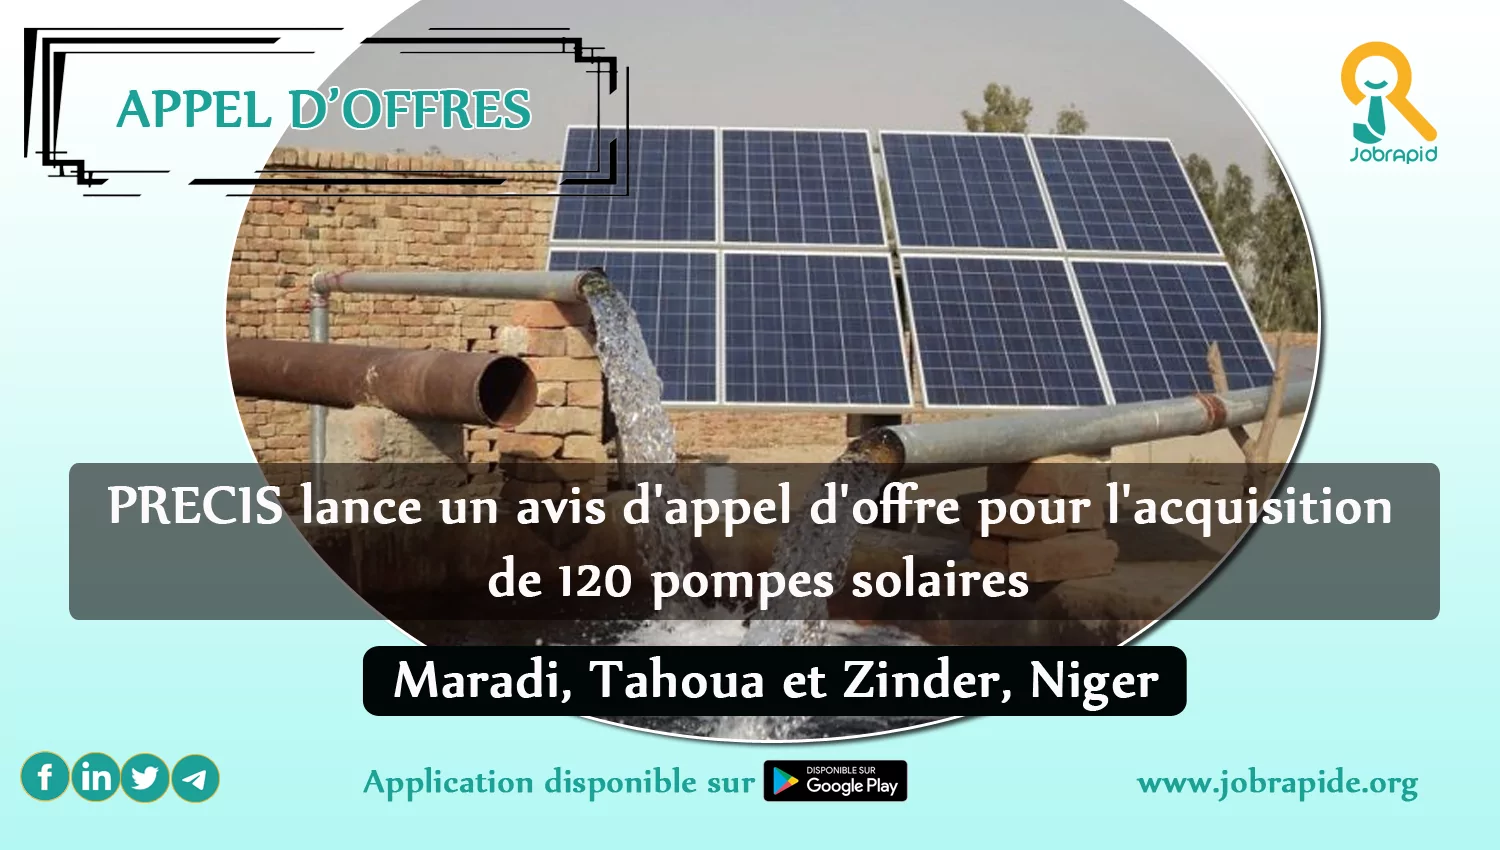 PRECIS lance un avis d’appel d’offre pour l’acquisition de 120 pompes solaires, Maradi, Tahoua et Zinder, Niger